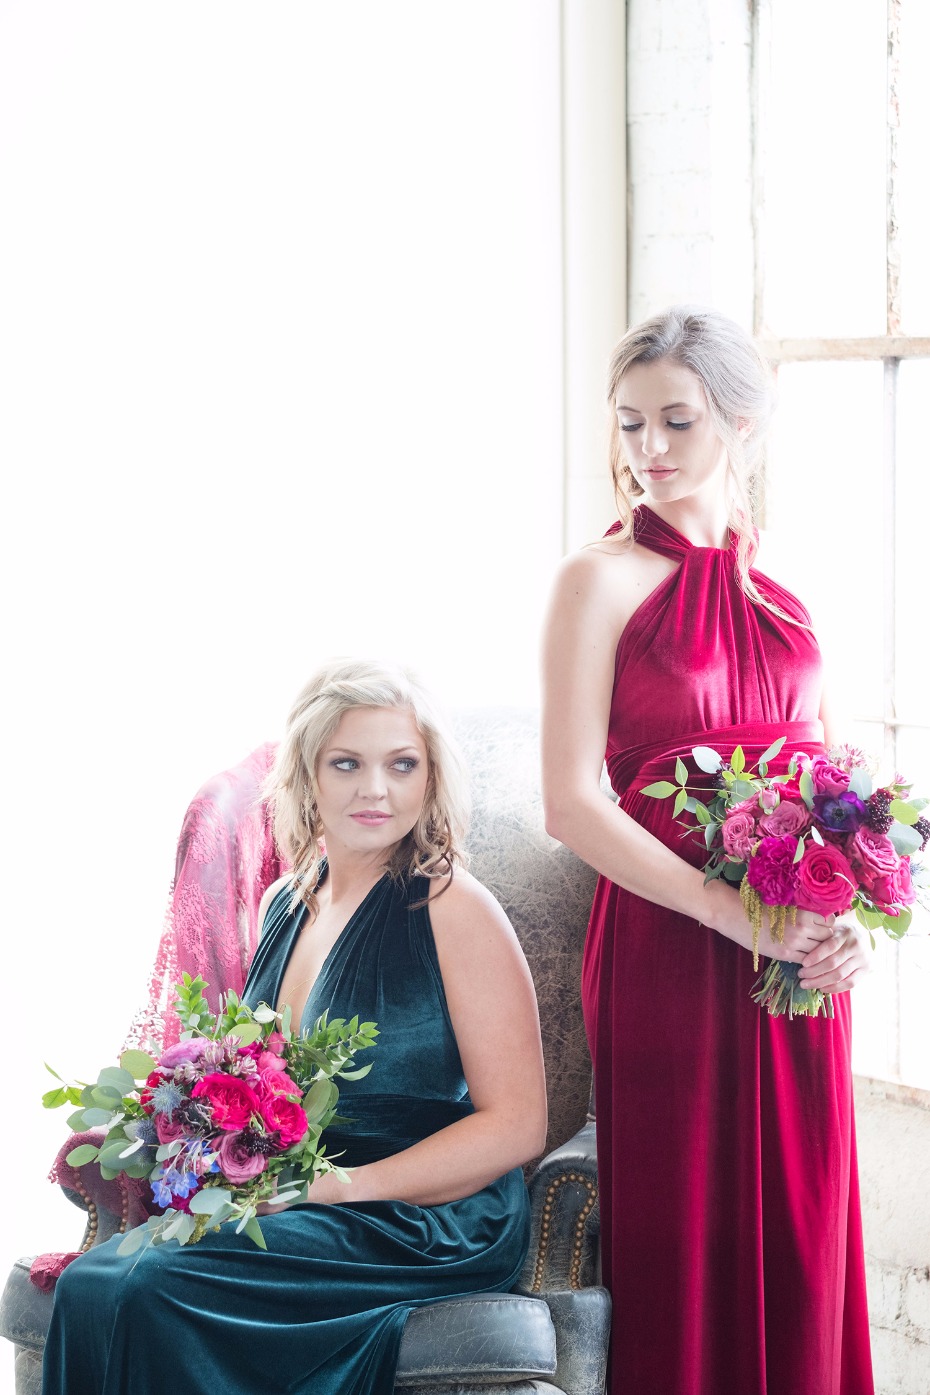 jewel tone bridesmaids dresses in lush velvet